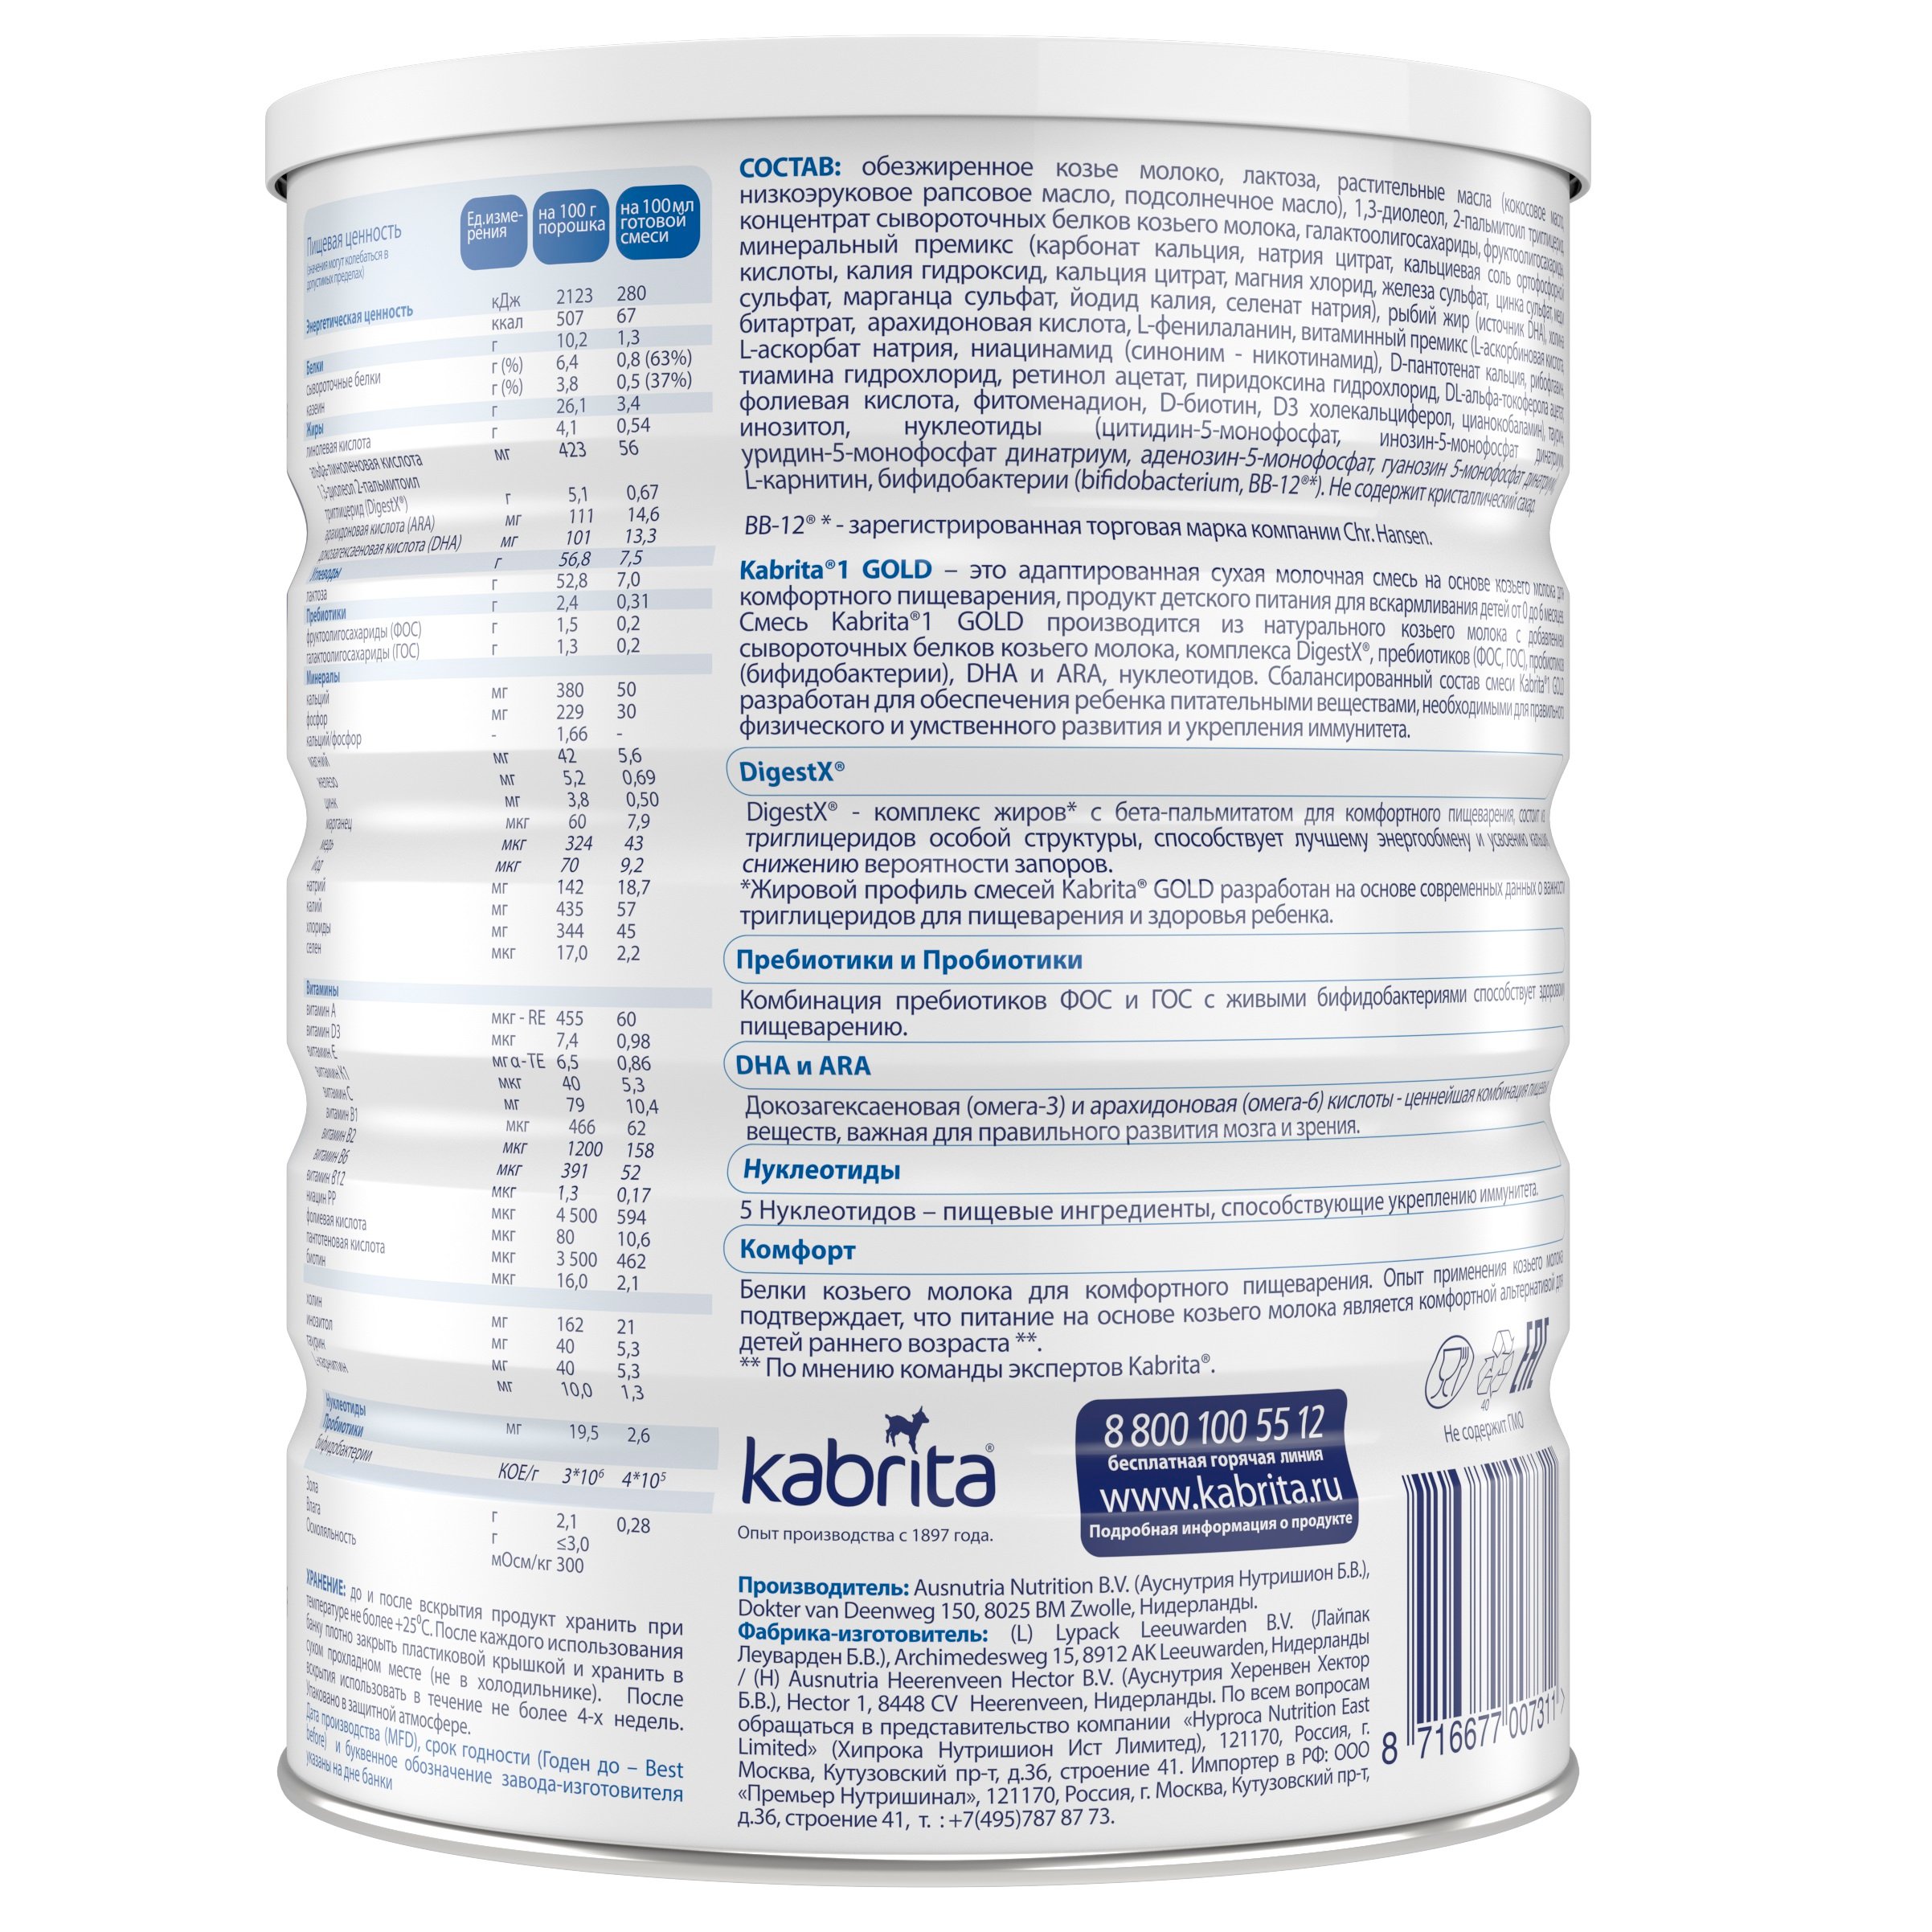 Адаптированная сухая молочная смесь на козьем молоке Kabrita 1 Gold, 800 г - фото 2